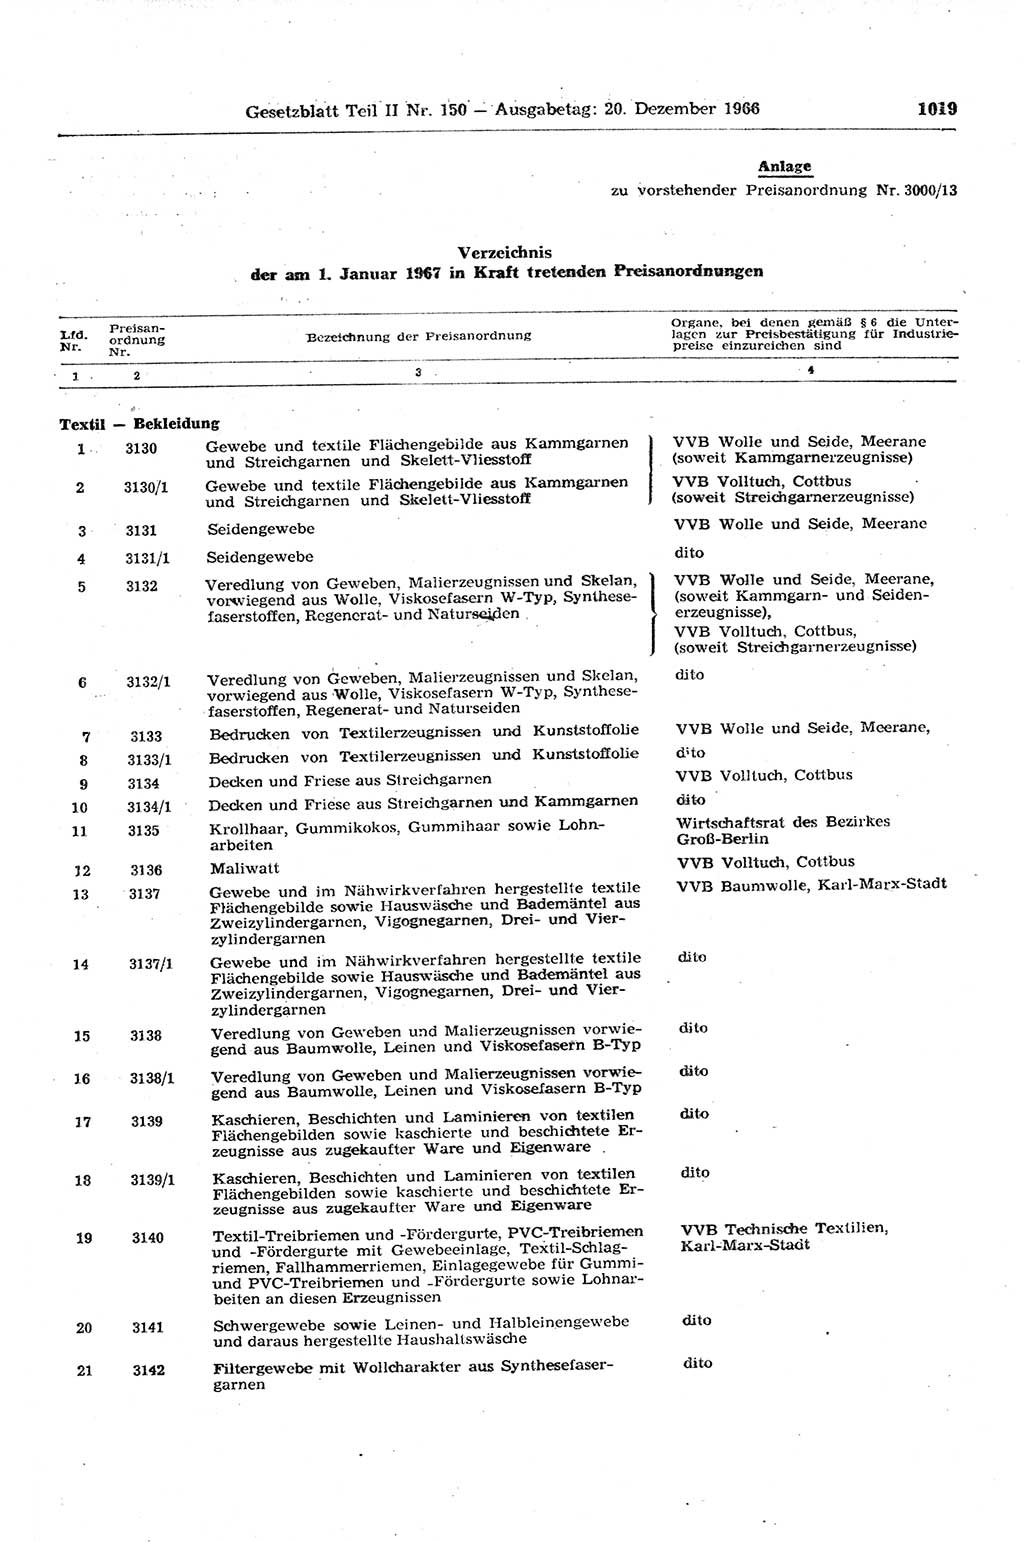 Gesetzblatt (GBl.) der Deutschen Demokratischen Republik (DDR) Teil ⅠⅠ 1966, Seite 1019 (GBl. DDR ⅠⅠ 1966, S. 1019)